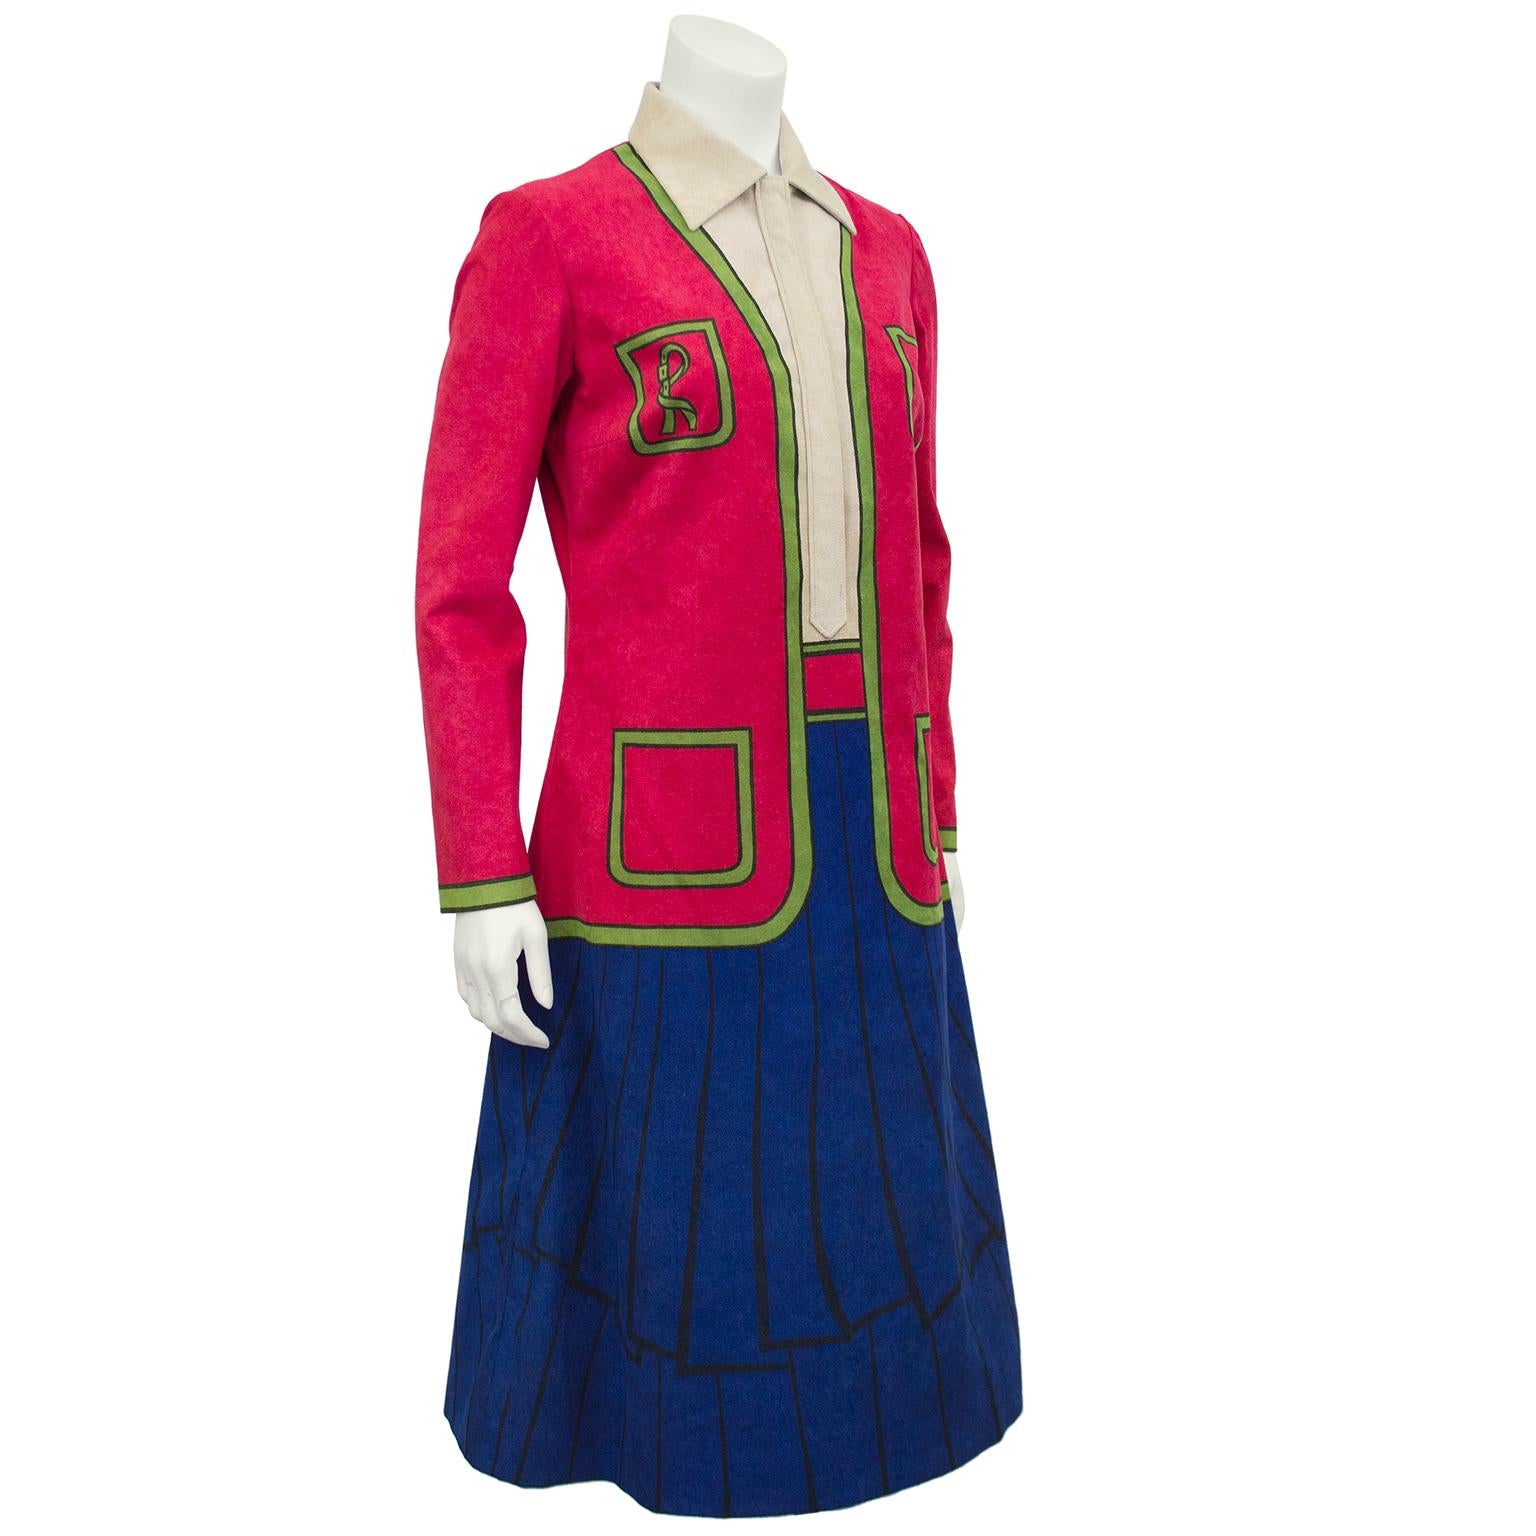 Schönes 1960er-Jahre-Ultrasuede-Trompe-l'oeil-Kleid von Roberta di Camerino. Das farbenfrohe Kleid erweckt den Eindruck, als trüge man einen blauen Rock mit einem roten, grün abgesetzten Pullover über einem Hemd mit Knopfleiste. Dieser einzigartige